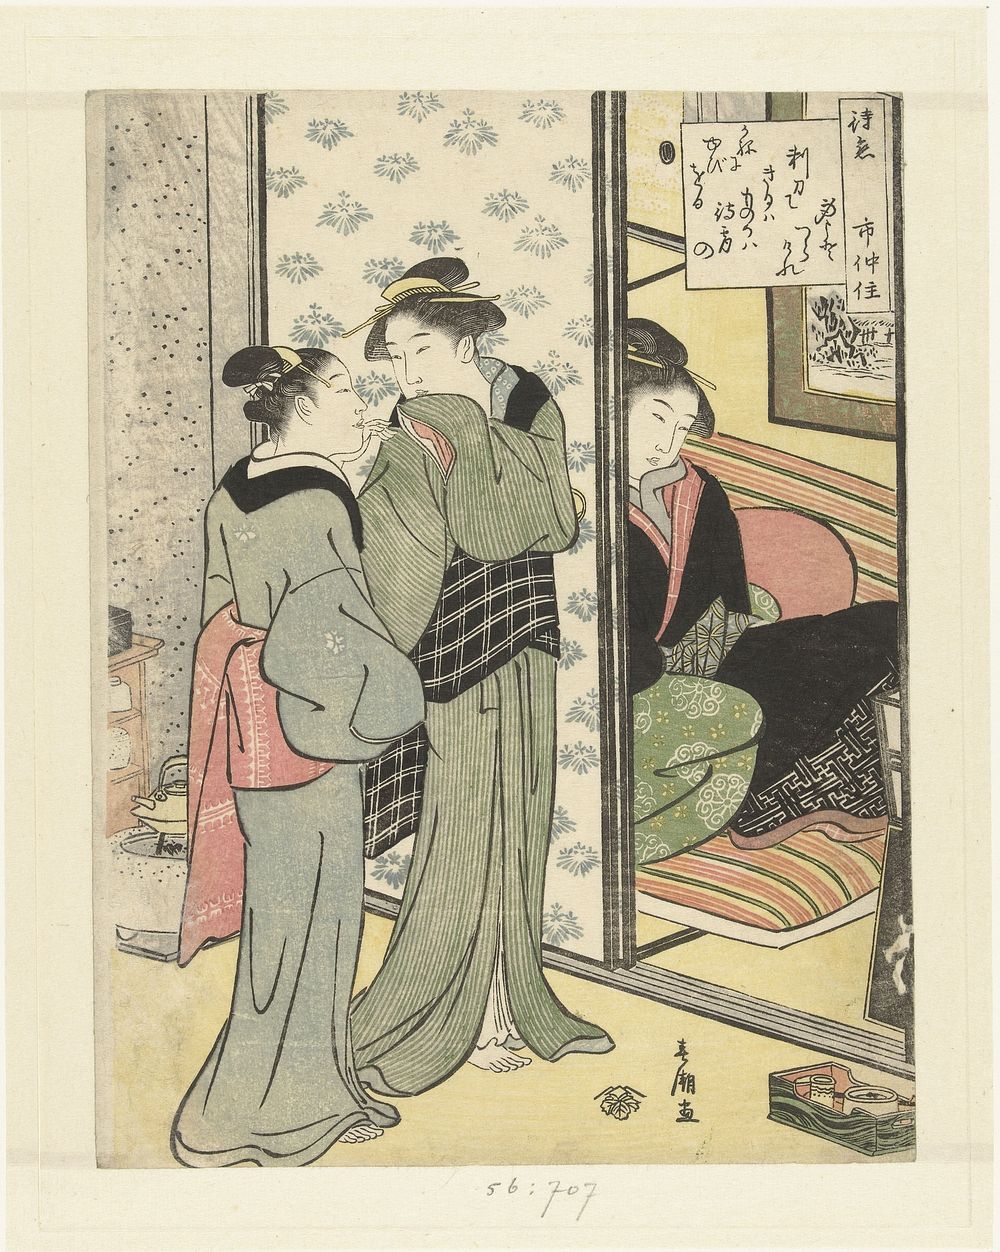 Wachtende liefde (1790 - 1795) by Katsukawa Shunchō and Tsutaya Juzaburo Koshodo